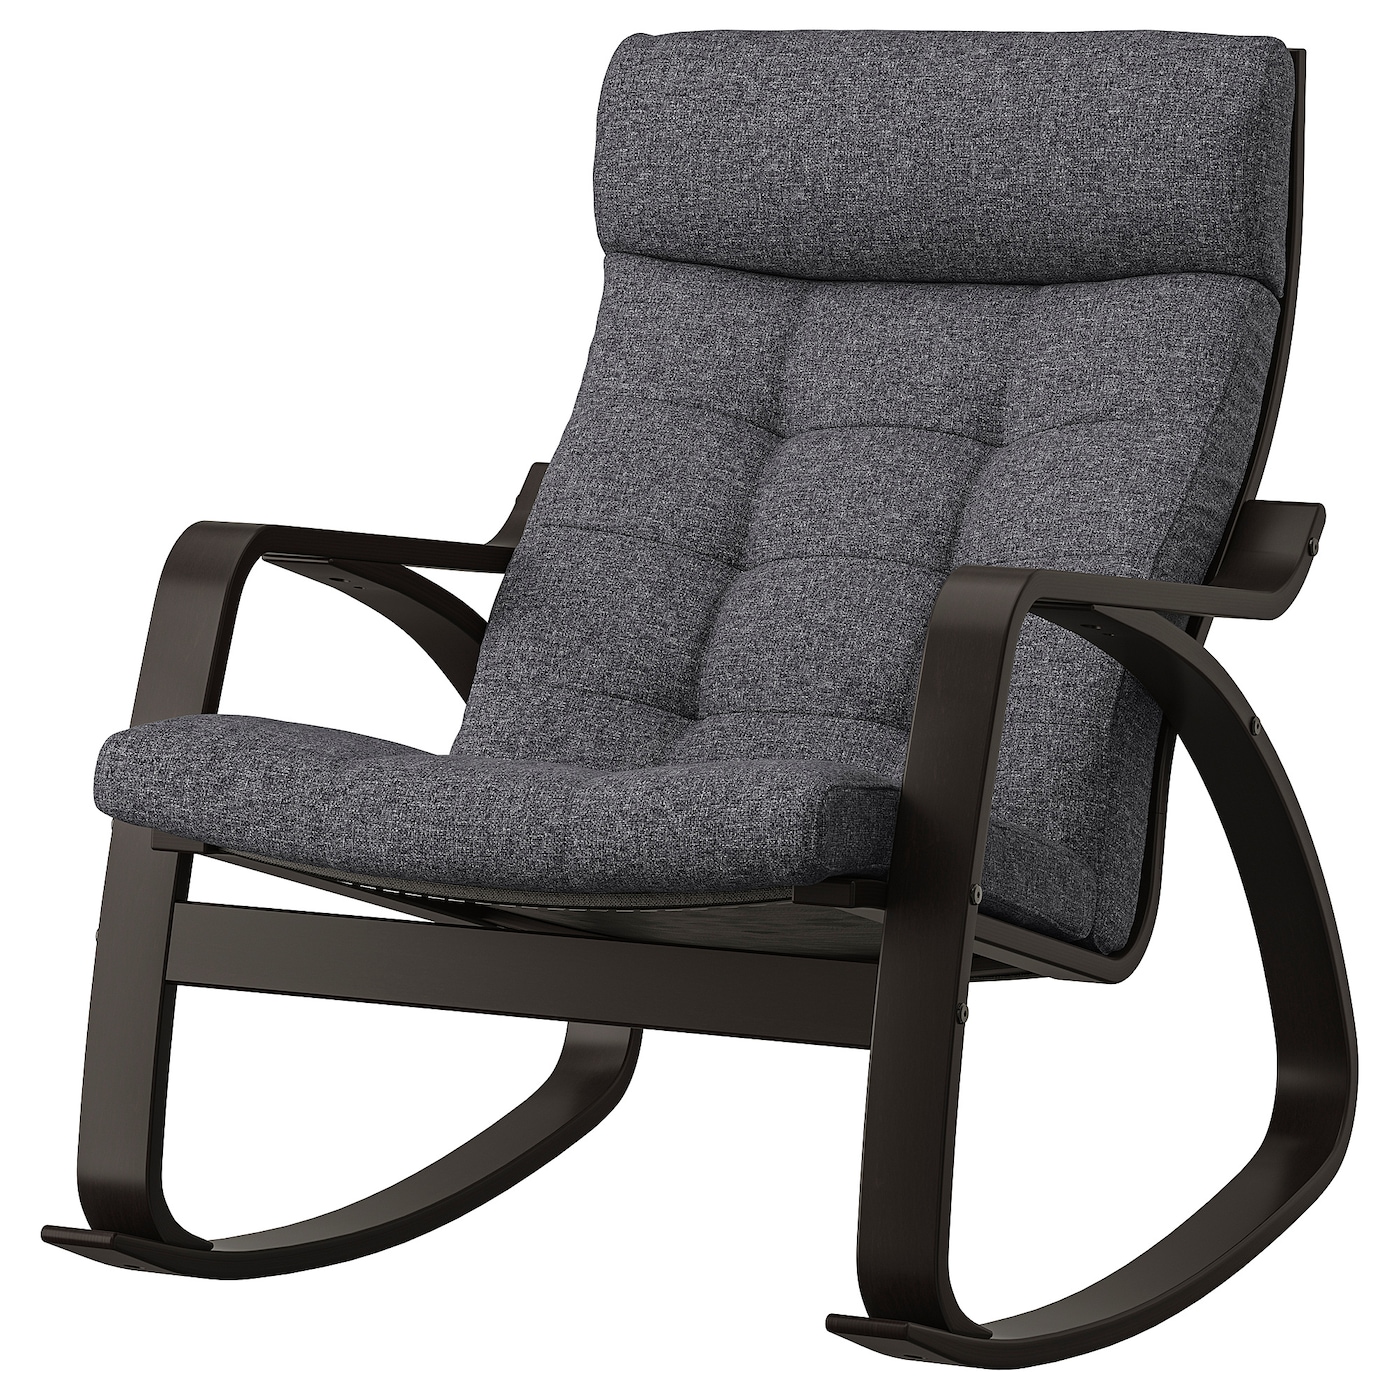 ПОЭНГ Кресло-качалка, черно-коричневый/Гуннаред темно-серый POÄNG IKEA детское кресло качалка детская кровать кресло качалка смарт bluetooth качели влево и вправо новая увеличенная подвесная корзина бесплатная